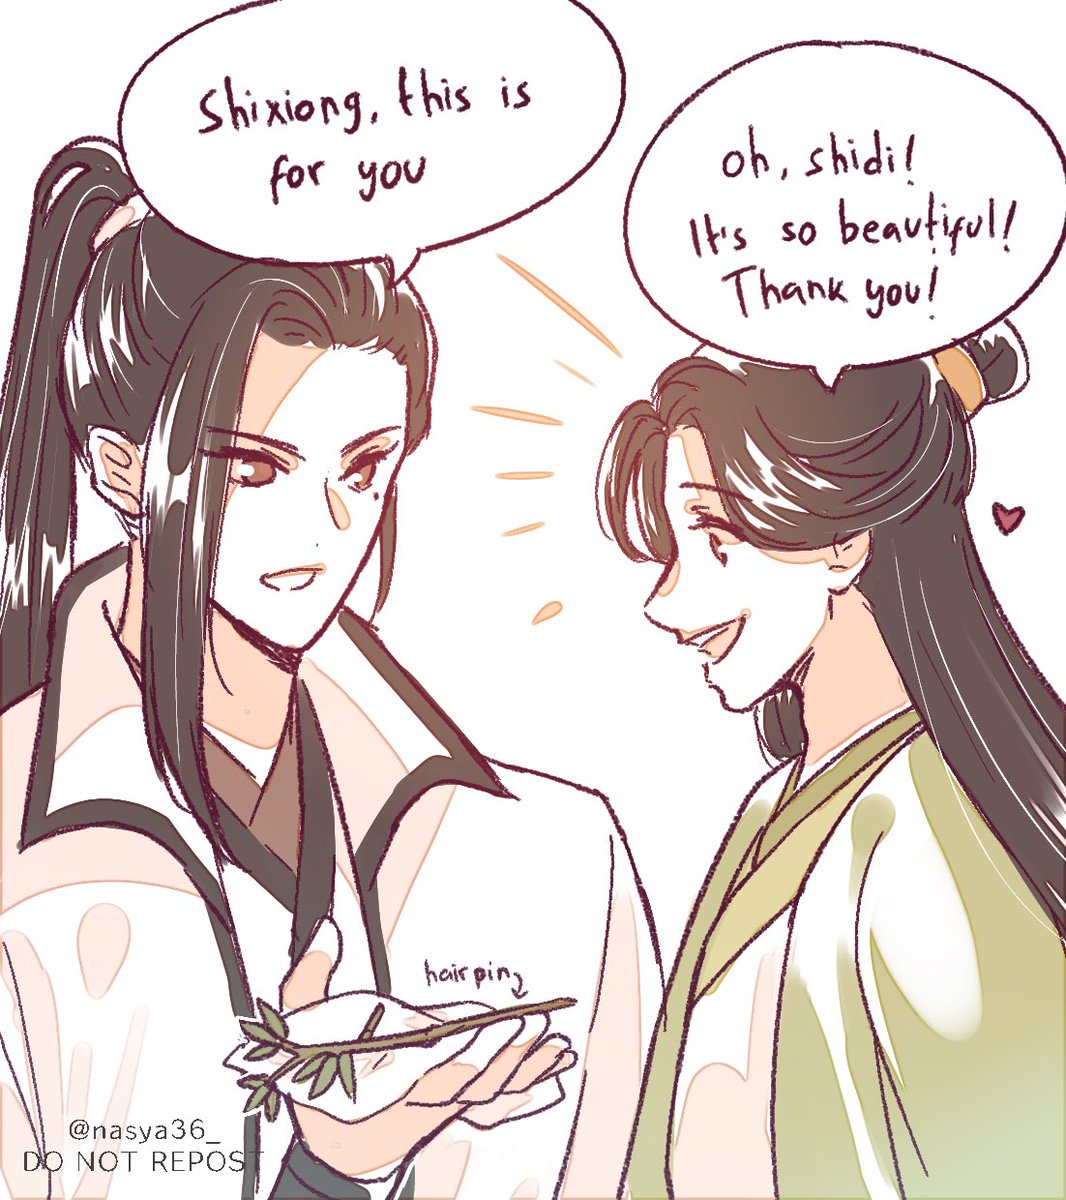 (1/2)Bro, is it gay to give hairpin as gift to you shixiong? 
#liushen 